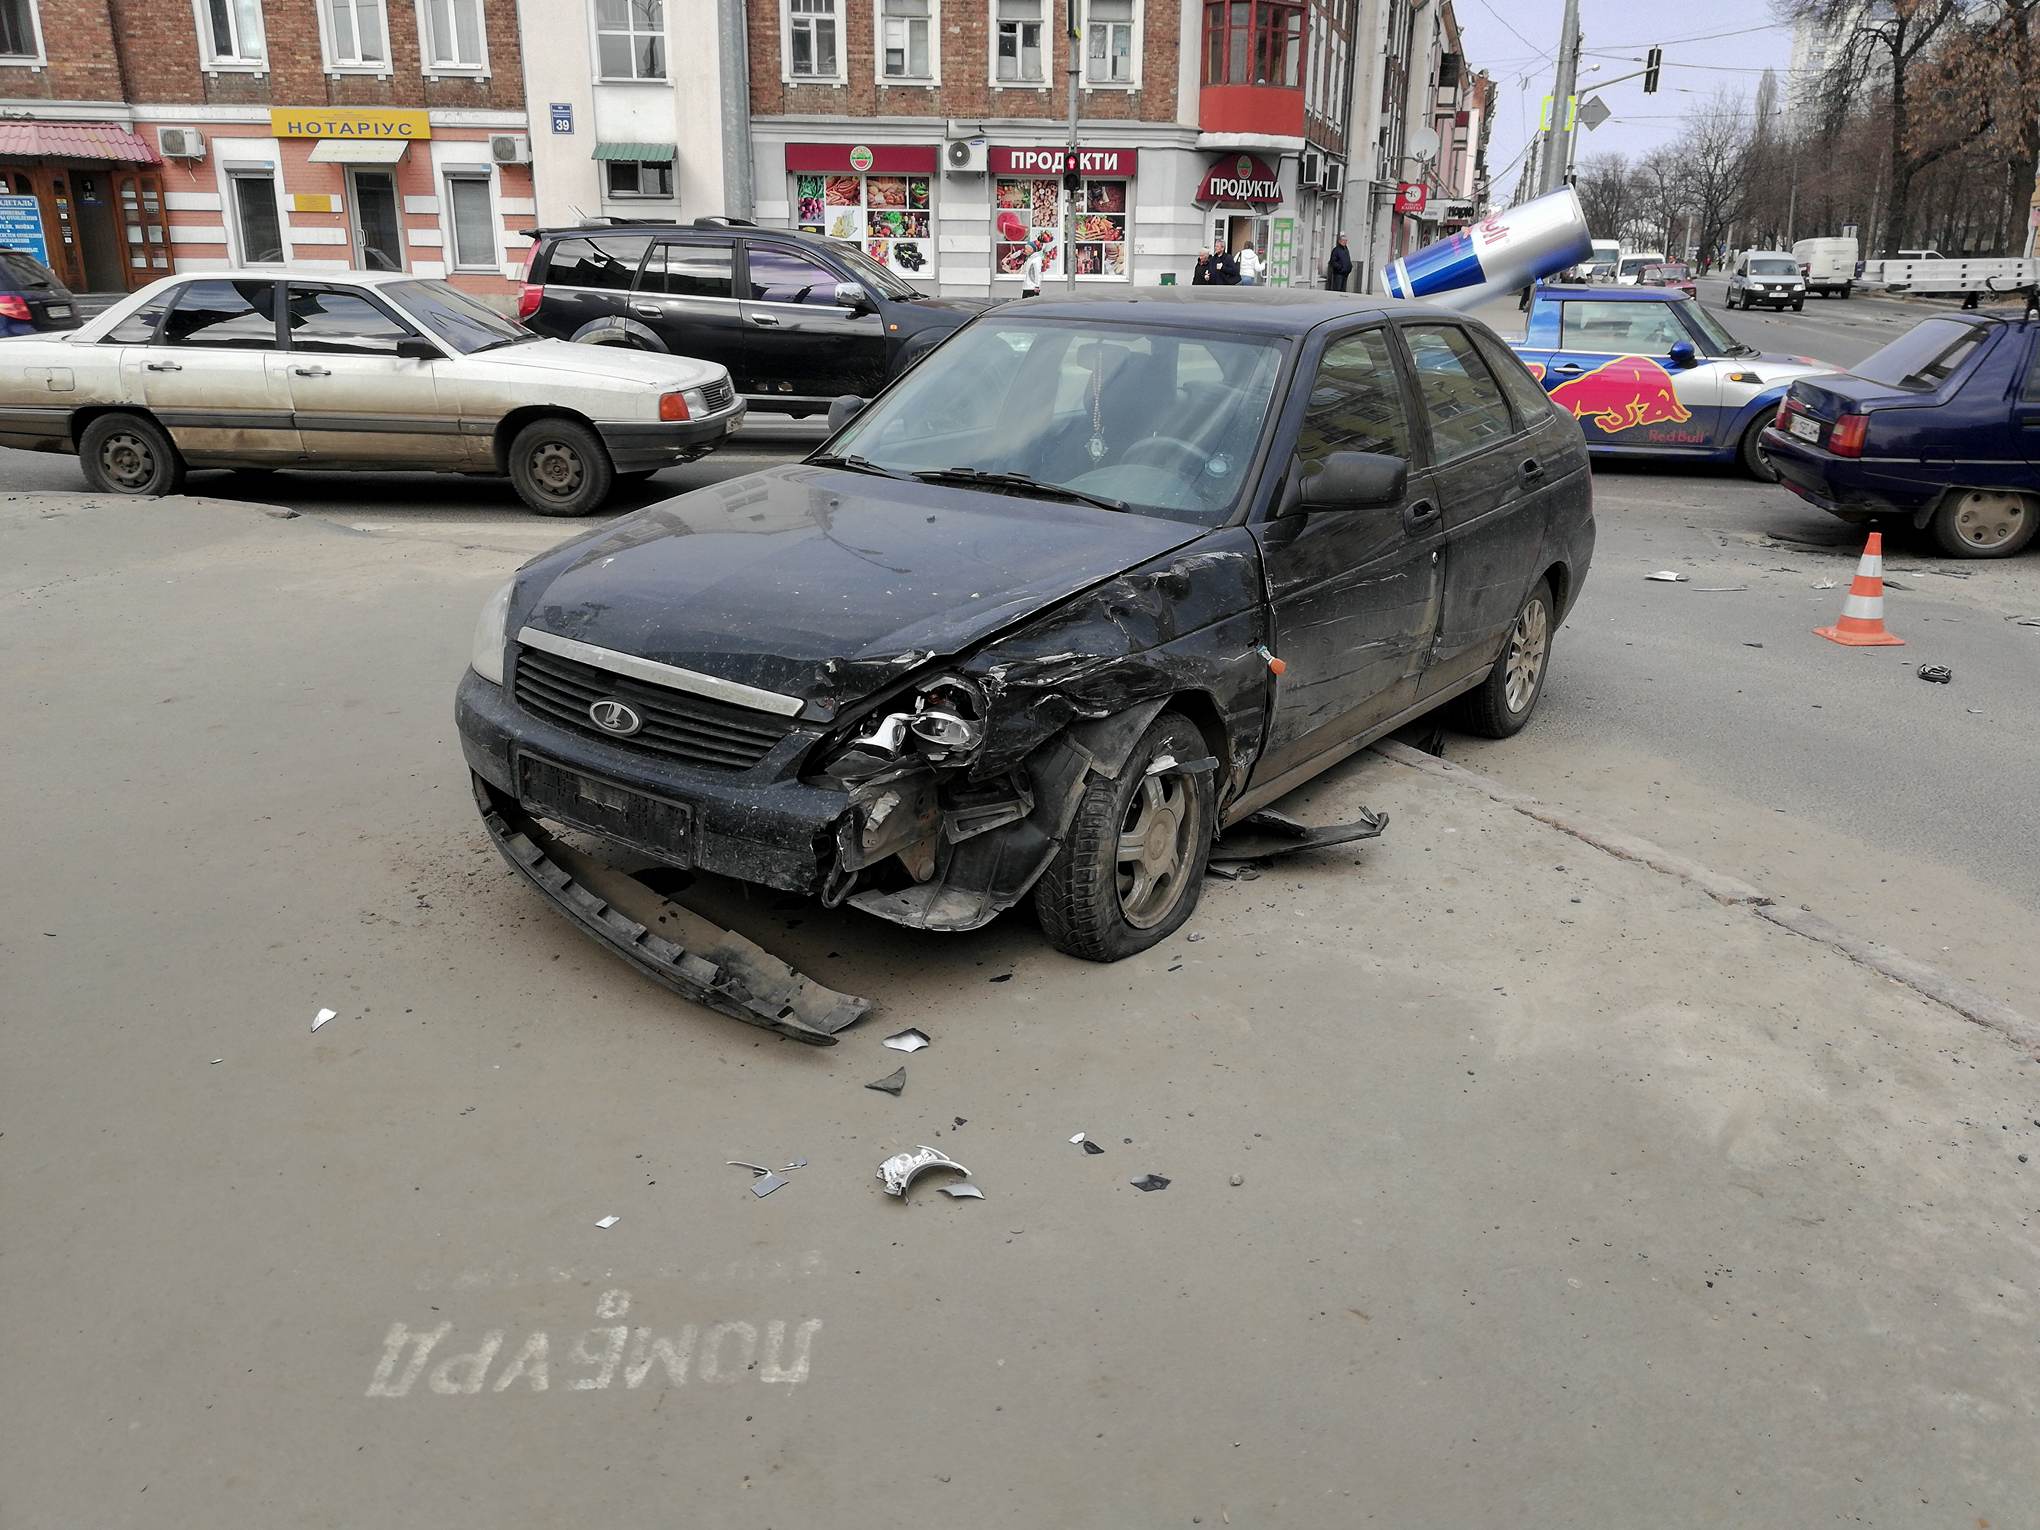 Двое автомобилистов устроили конфликт в центре Харькова (фото, видео)